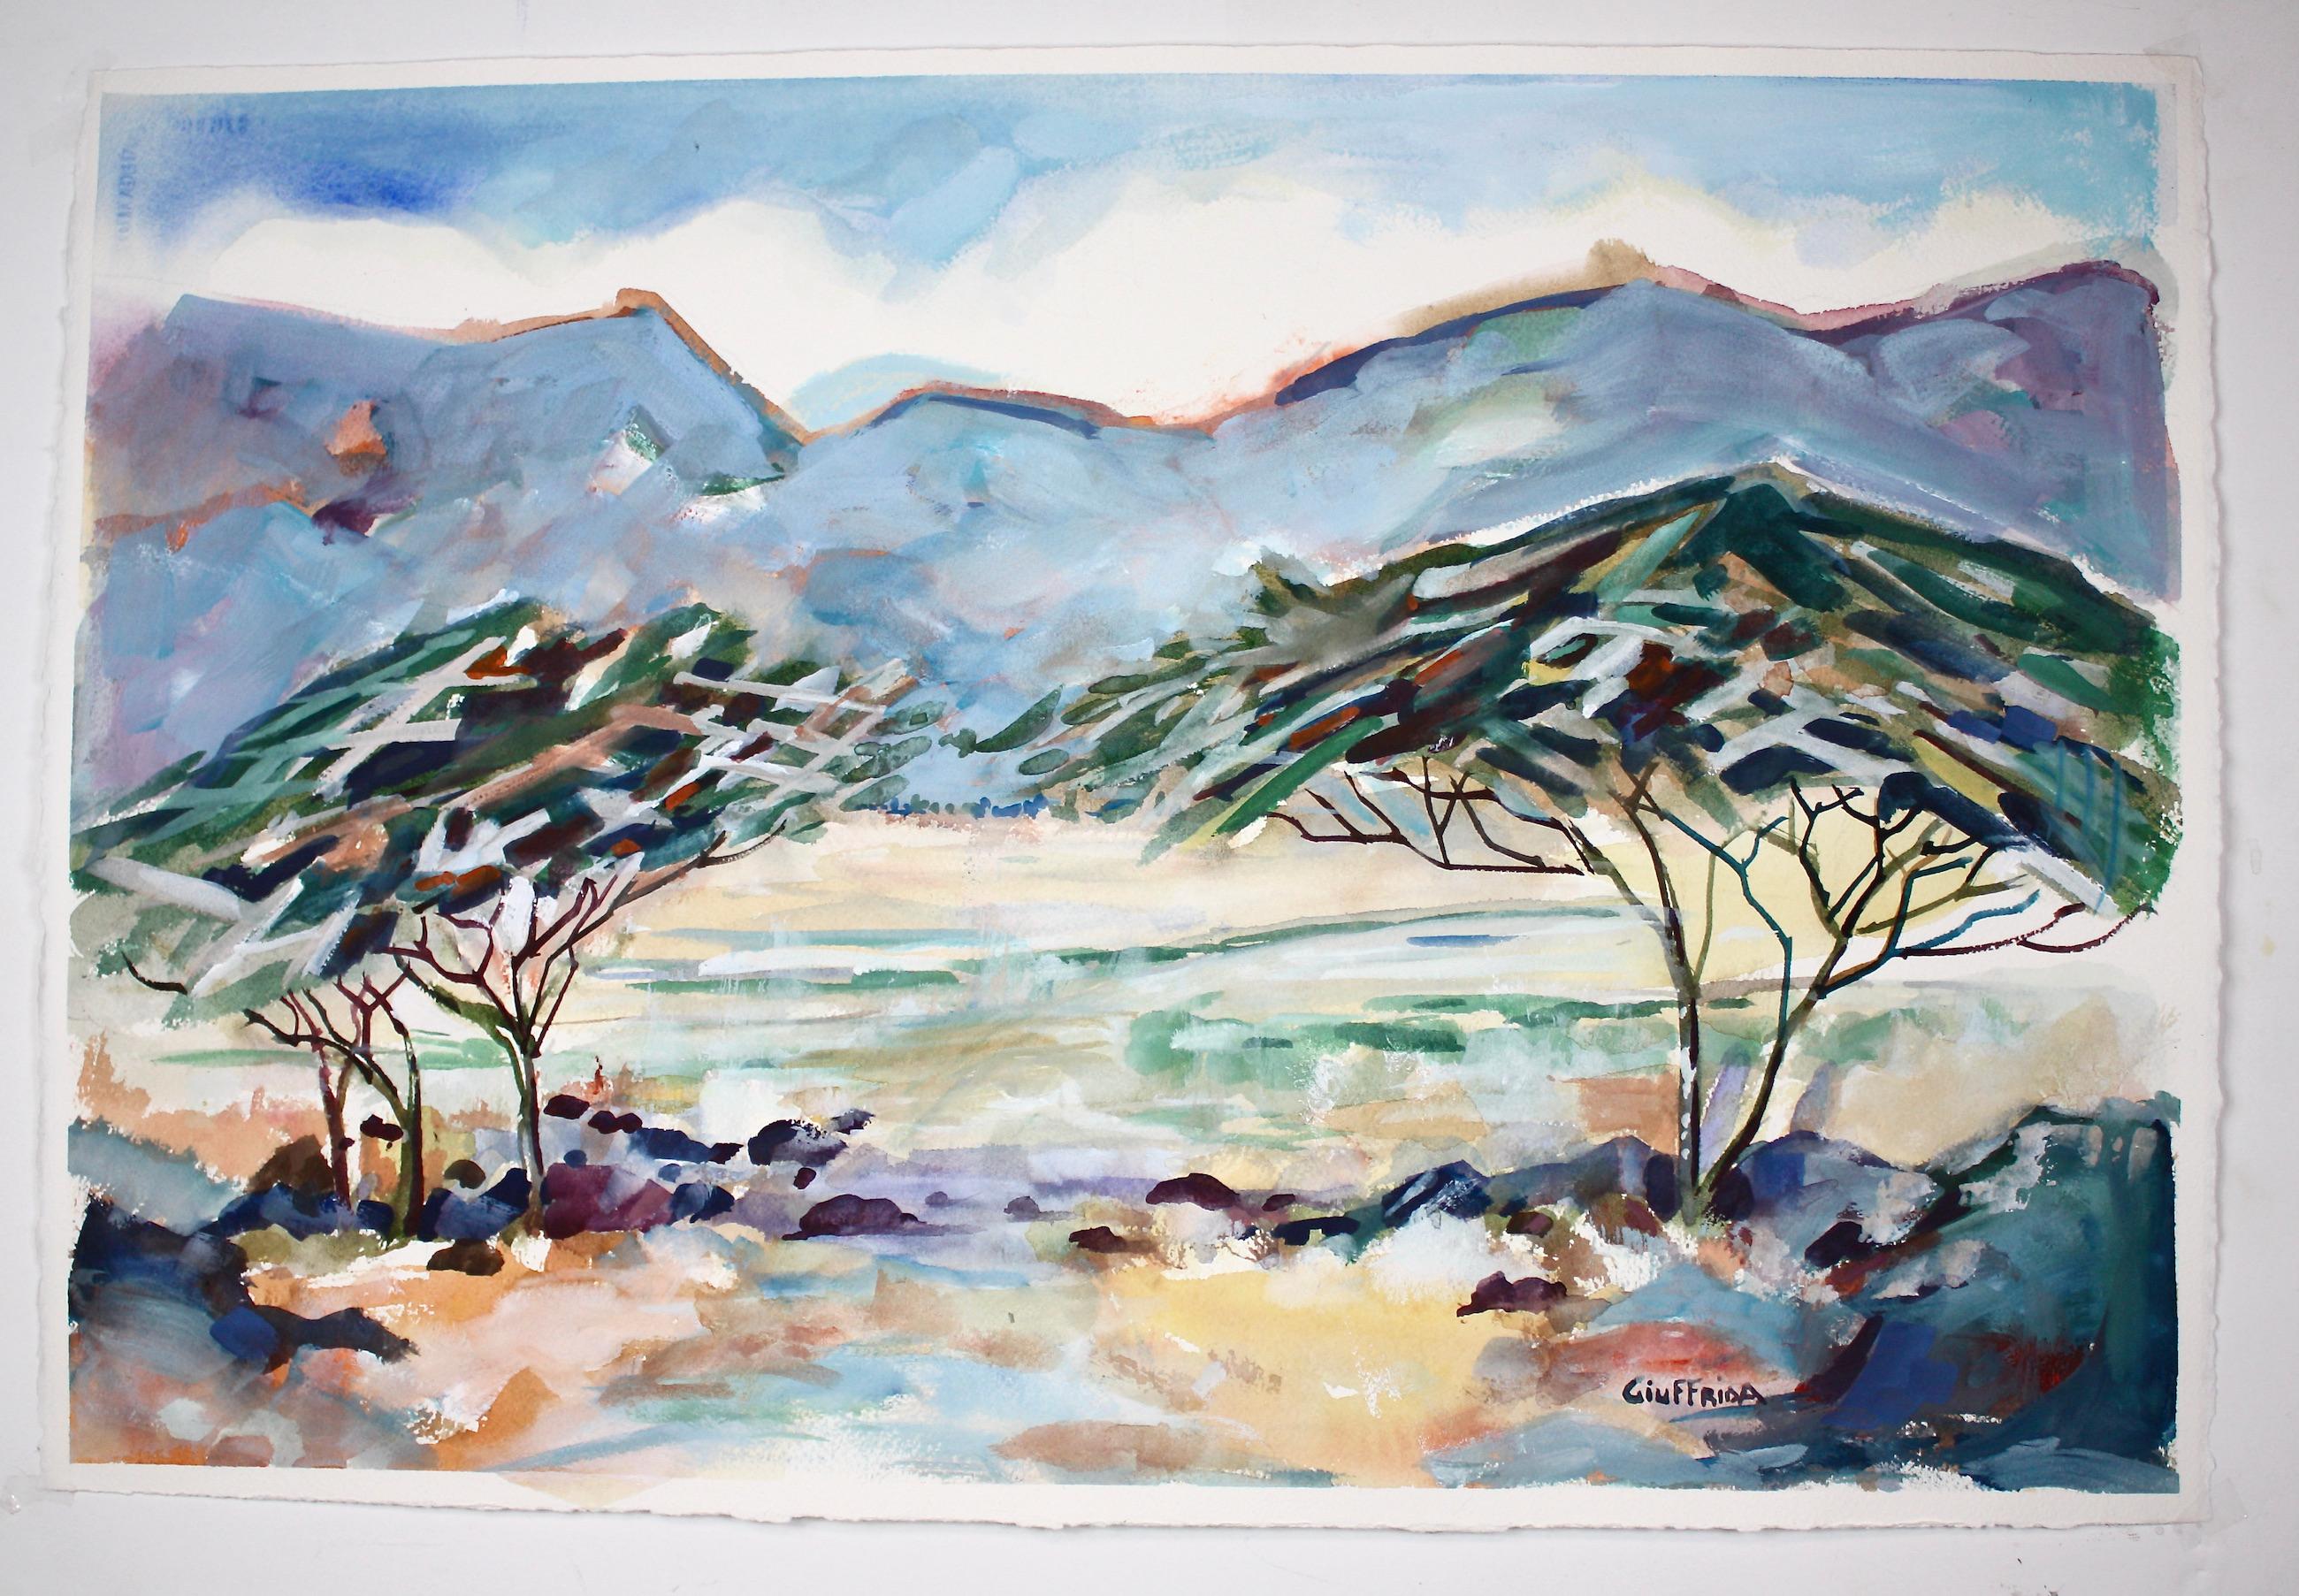 <p>Kommentare des Künstlers<br>Der Künstler Joe Giuffrida zeigt eine expressionistische Ansicht von zwei Akazienbäumen. Er fängt die Schönheit der Baldachine mit strukturierten und farbigen Gestaltungselementen ein. Die schraffierten Farbbänder